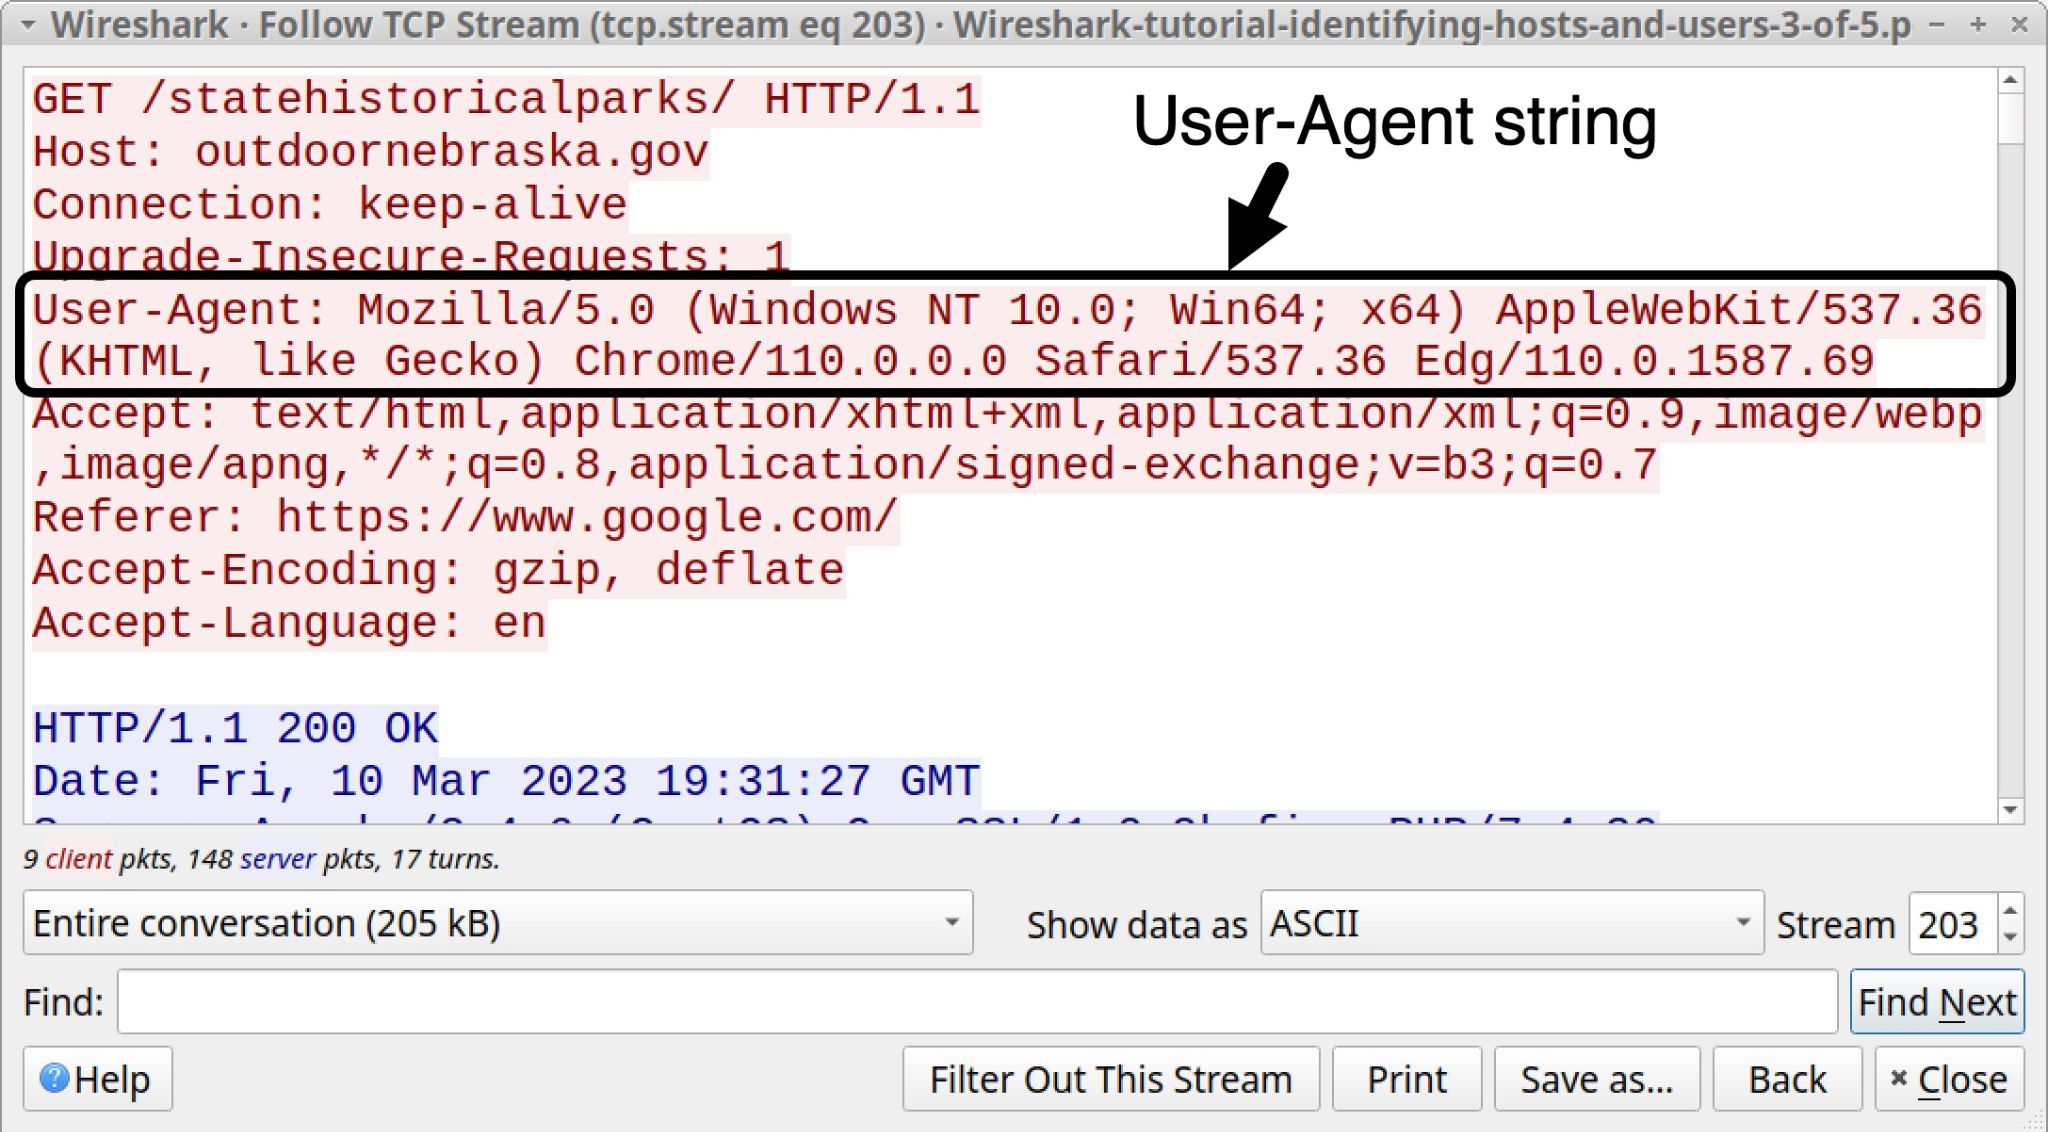 画像 10 は、Wireshark の TCP ストリーム ウィンドウのスクリーンショットです。黒い四角形と矢印で強調表示されているのは、User-Agent 文字列です。 